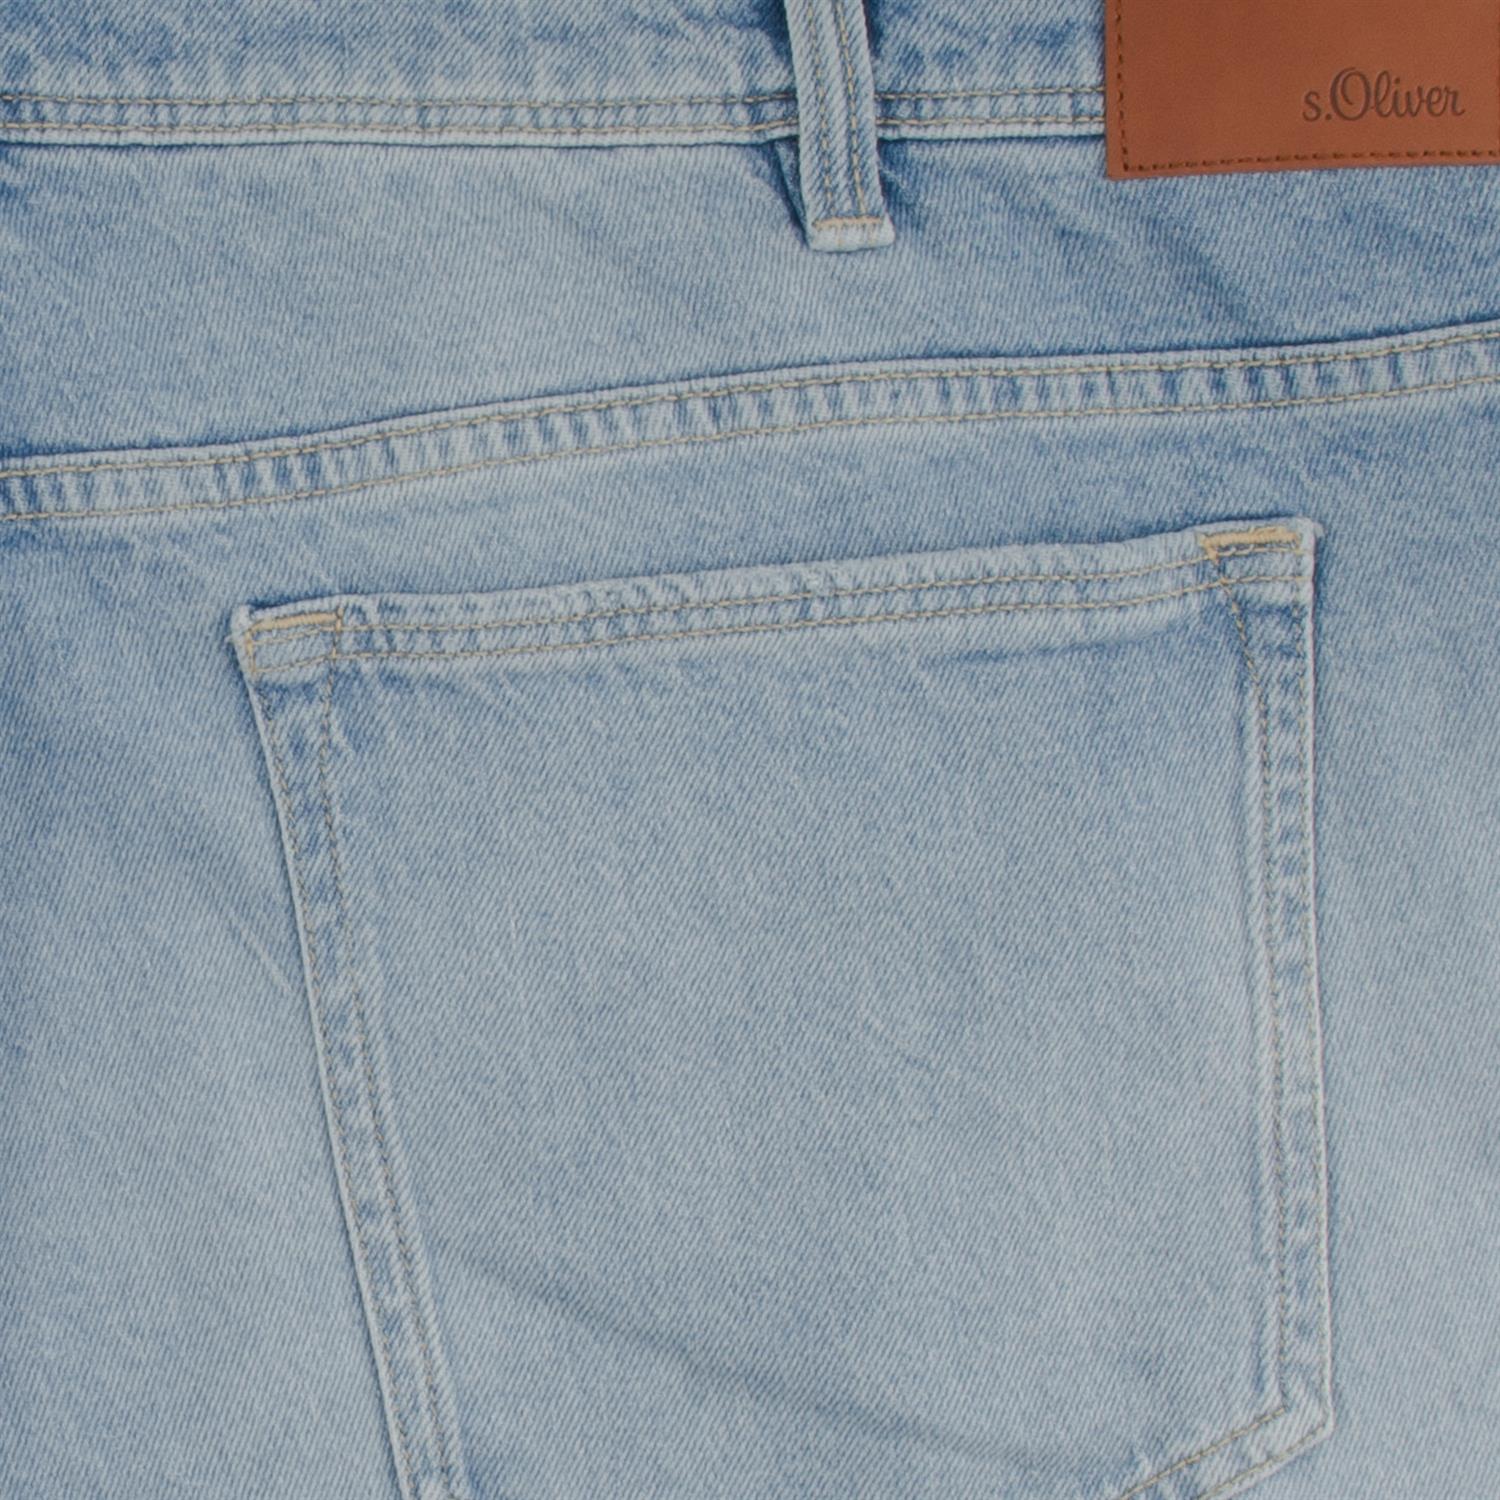 hellblau S.OLIVER in Übergrößen Herrenmode Jeans kaufen